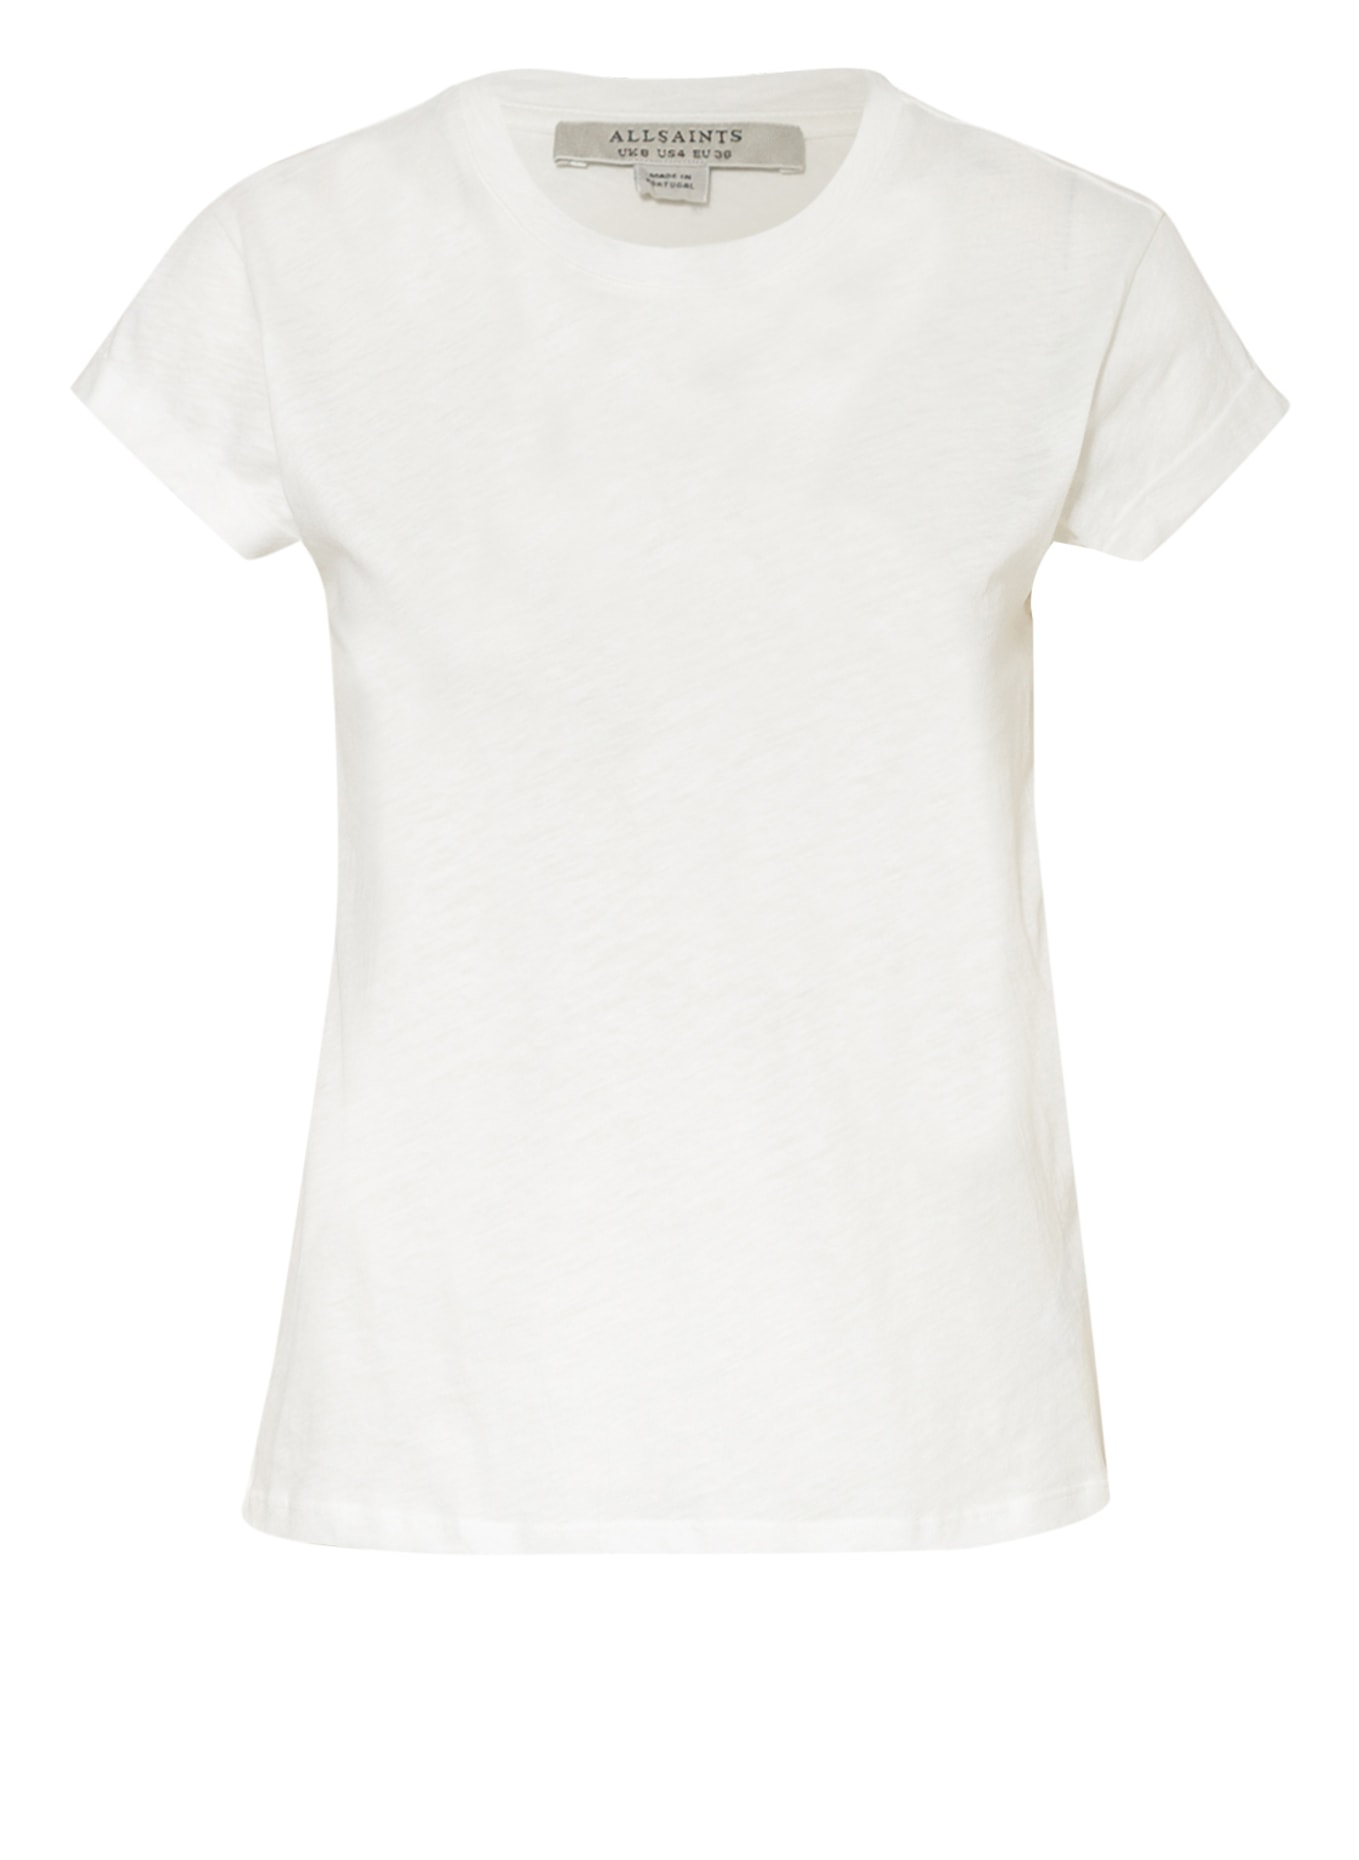 ALLSAINTS T-shirt ANNA, Color: WHITE (Image 1)